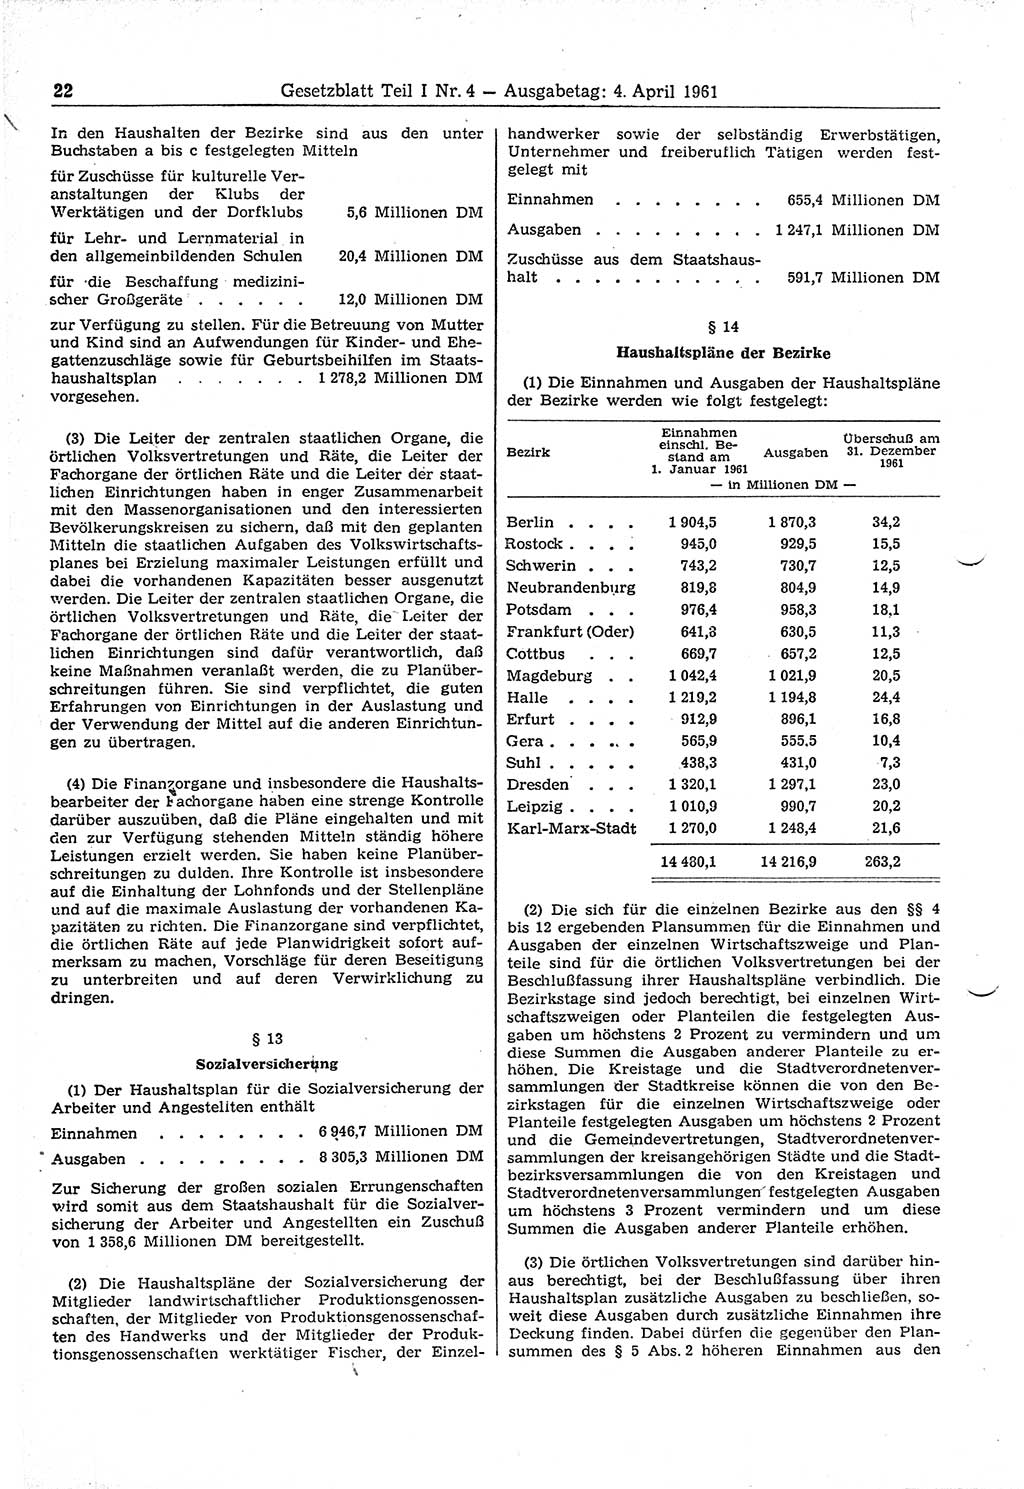 Gesetzblatt (GBl.) der Deutschen Demokratischen Republik (DDR) Teil Ⅰ 1961, Seite 22 (GBl. DDR Ⅰ 1961, S. 22)